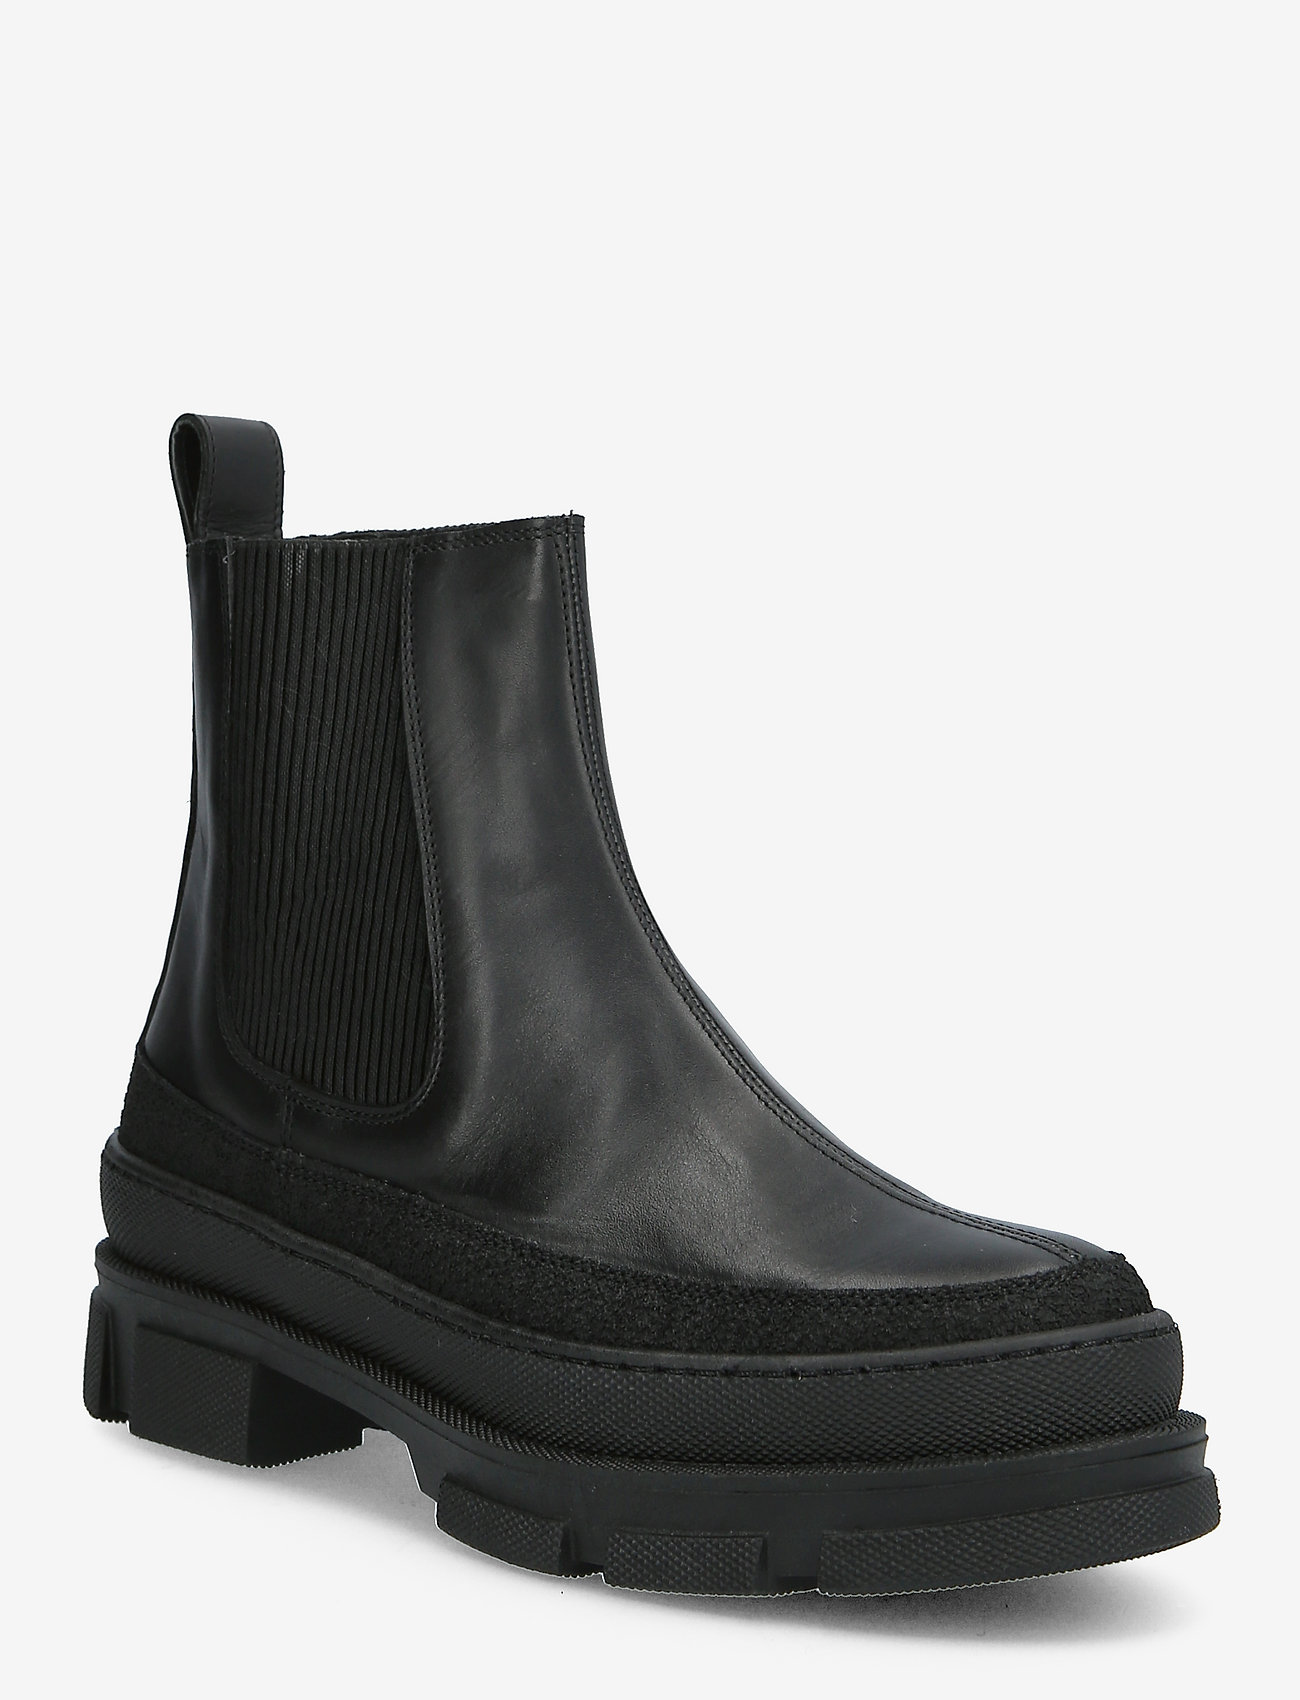 ANGULUS - Boots - flat - chelsea-saapad - 1321/1605/019 black/black/blac - 0